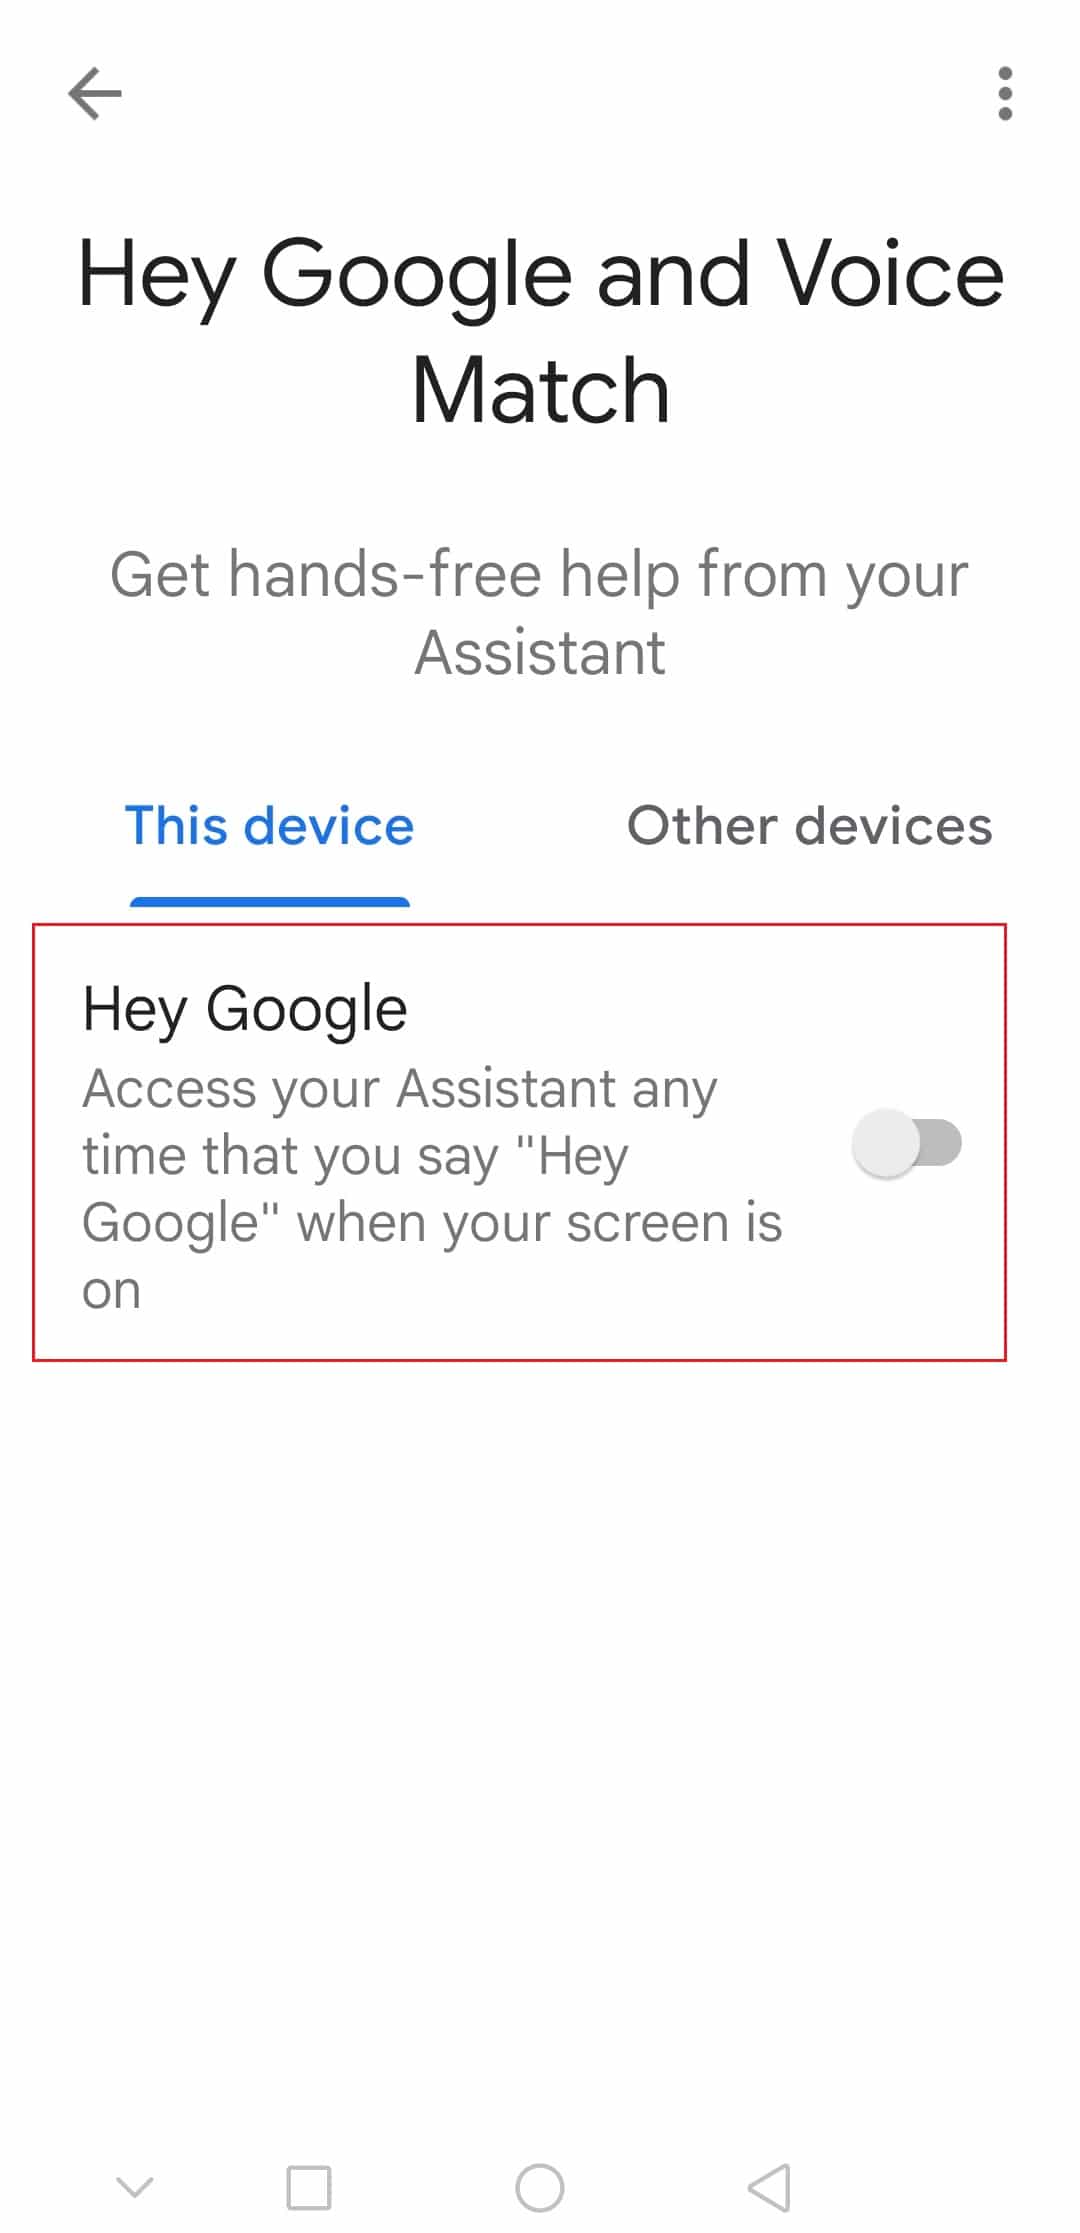 په Android کې د ګوګل Voice Match Settings کې Hey Google ته ټګول وکړئ